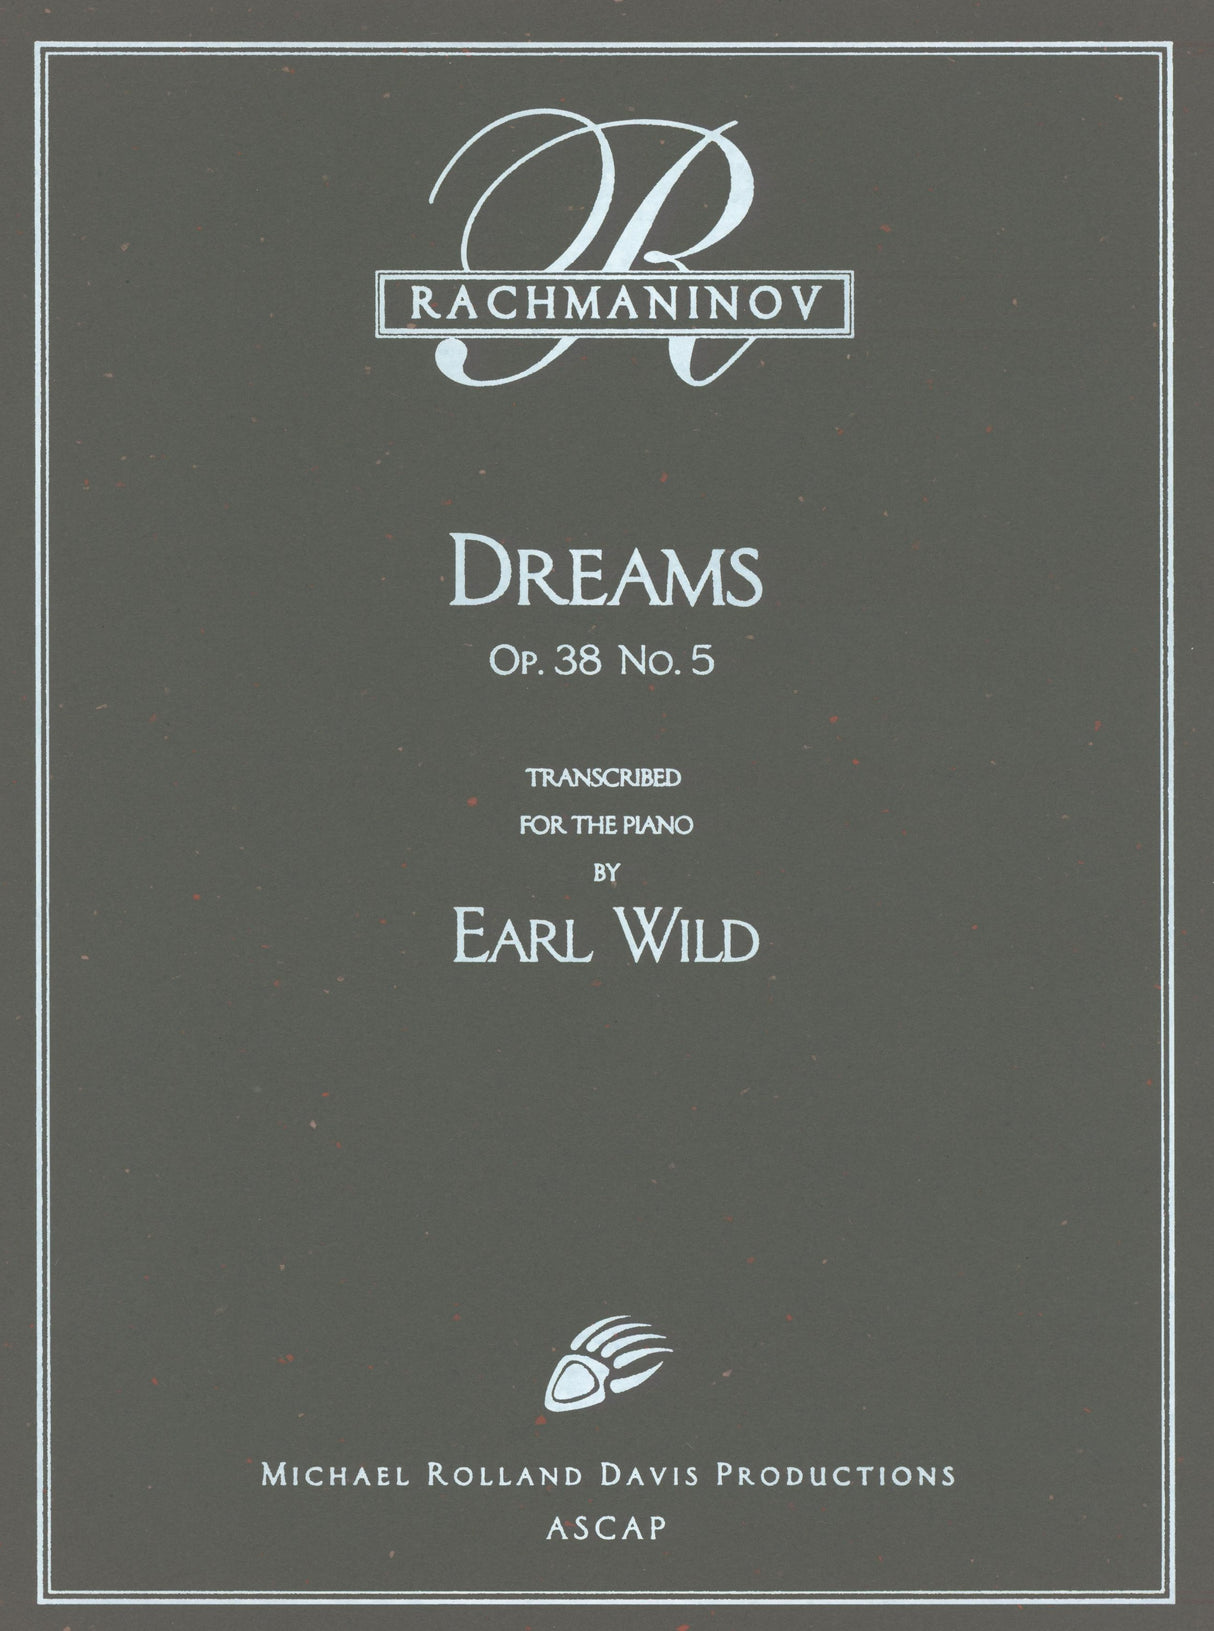 Rachmaninoff-Wild: Dreams, Op. 38, No. 5